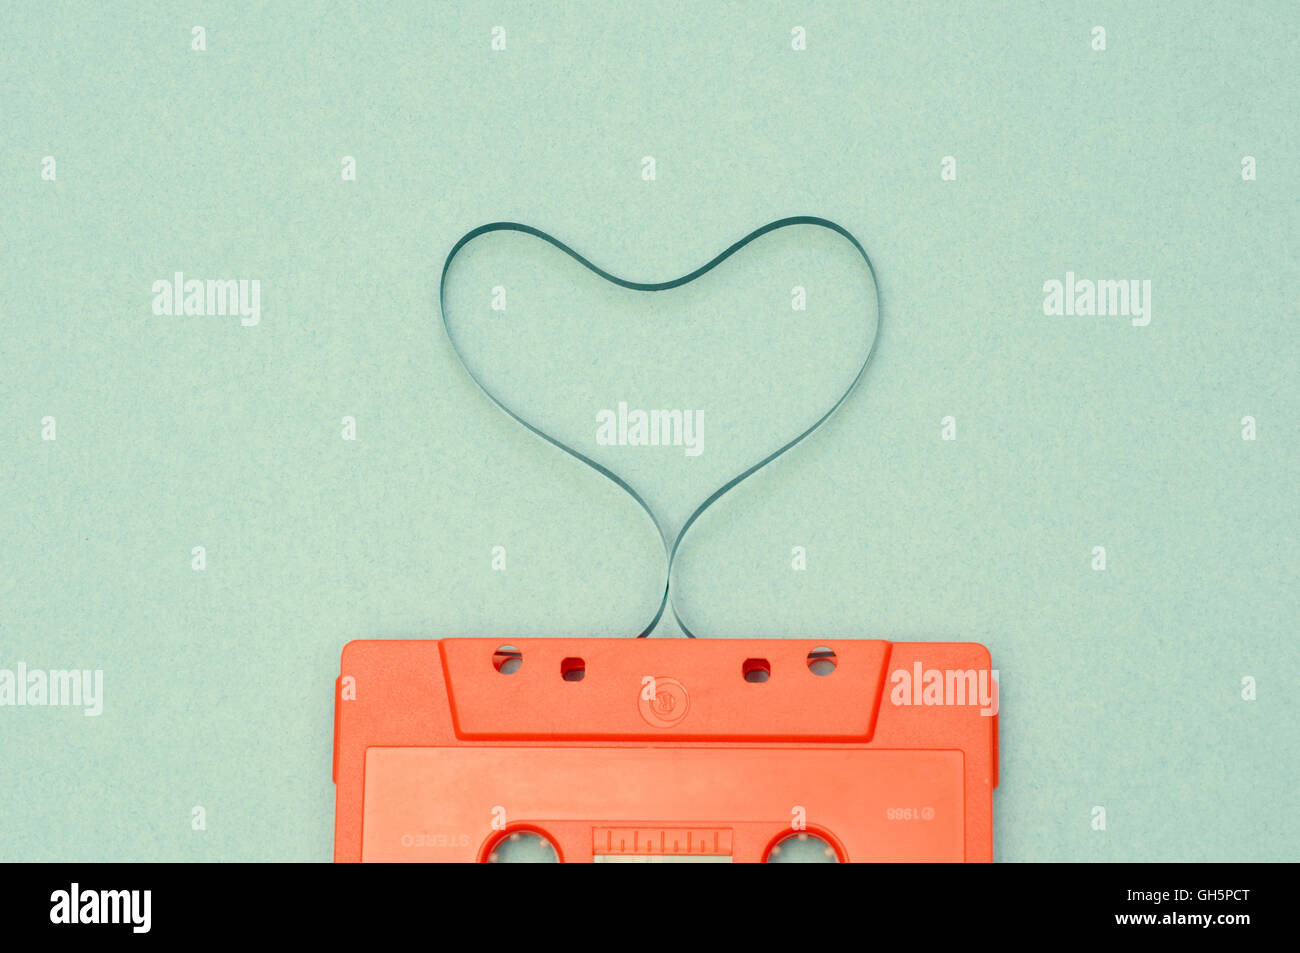 Cinta de audio en forma de corazón Foto de stock